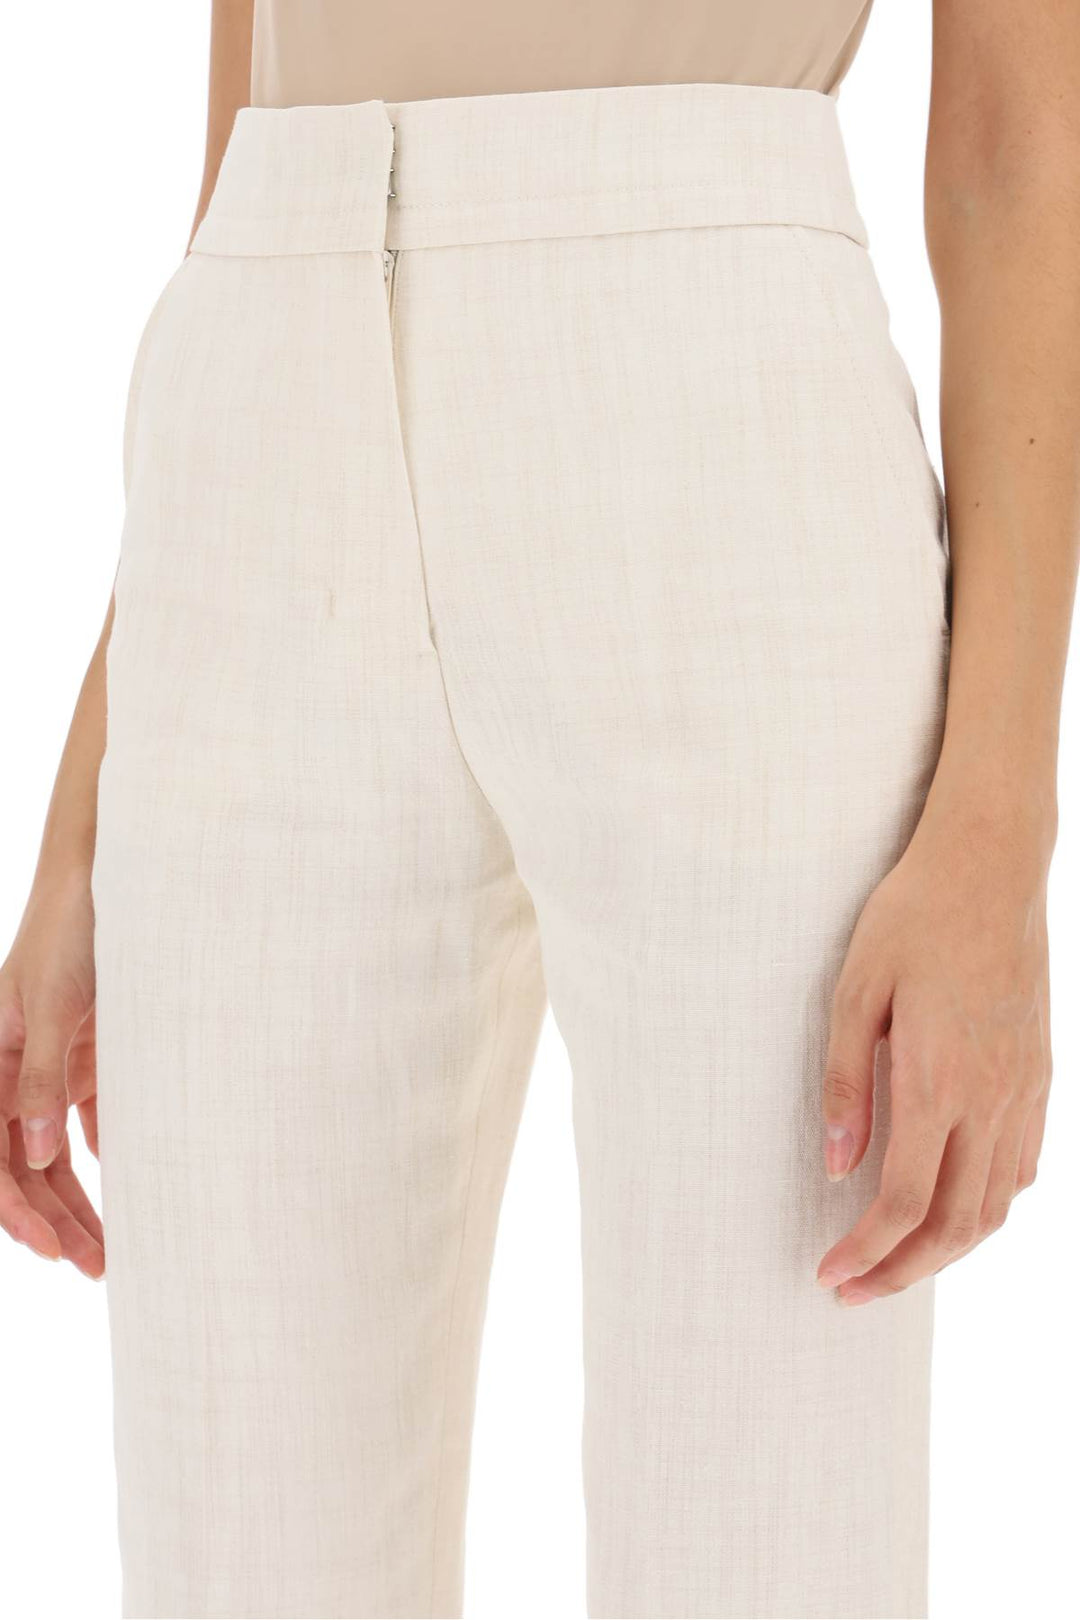 Jacquemus 'Le Pantalon Tibau' Slit Pants   White